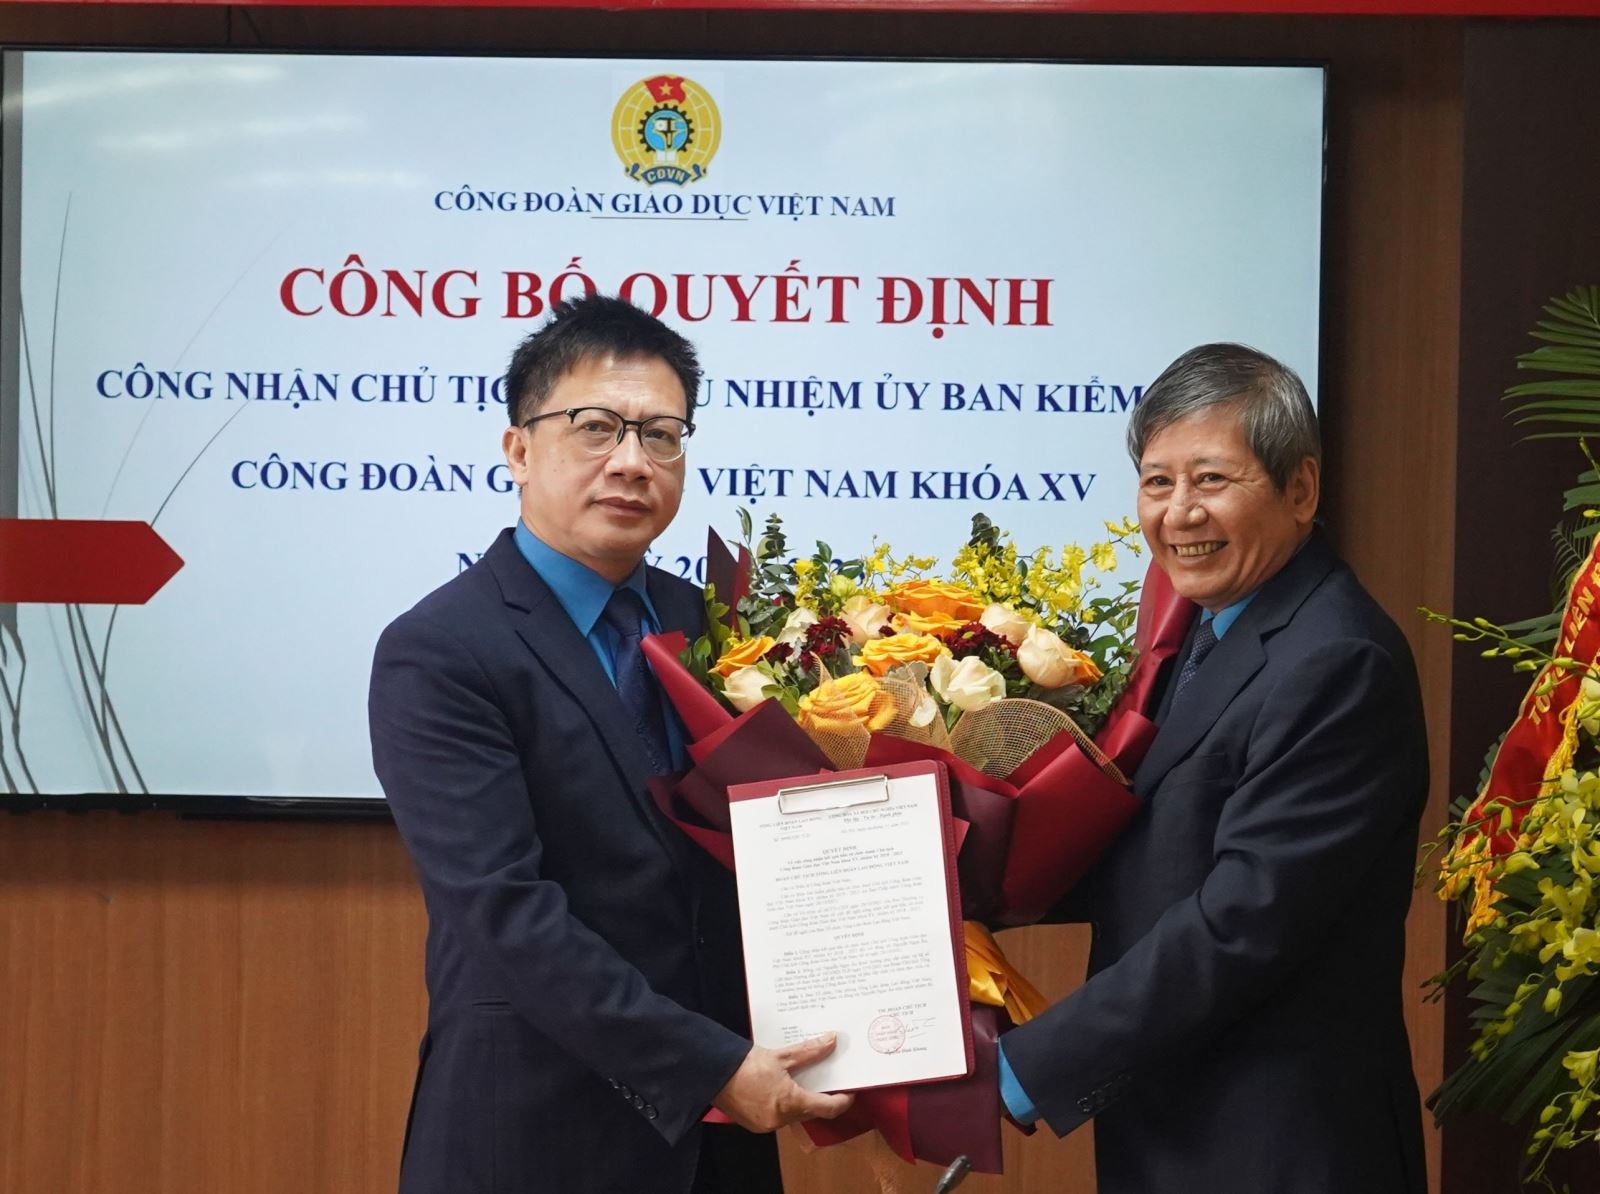 Công đoàn Giáo dục Việt Nam công bố quyết định công nhận Chủ tịch và Chủ nhiệm Ủy ban Kiểm tra khóa XV, nhiệm kỳ 2018 - 2023.